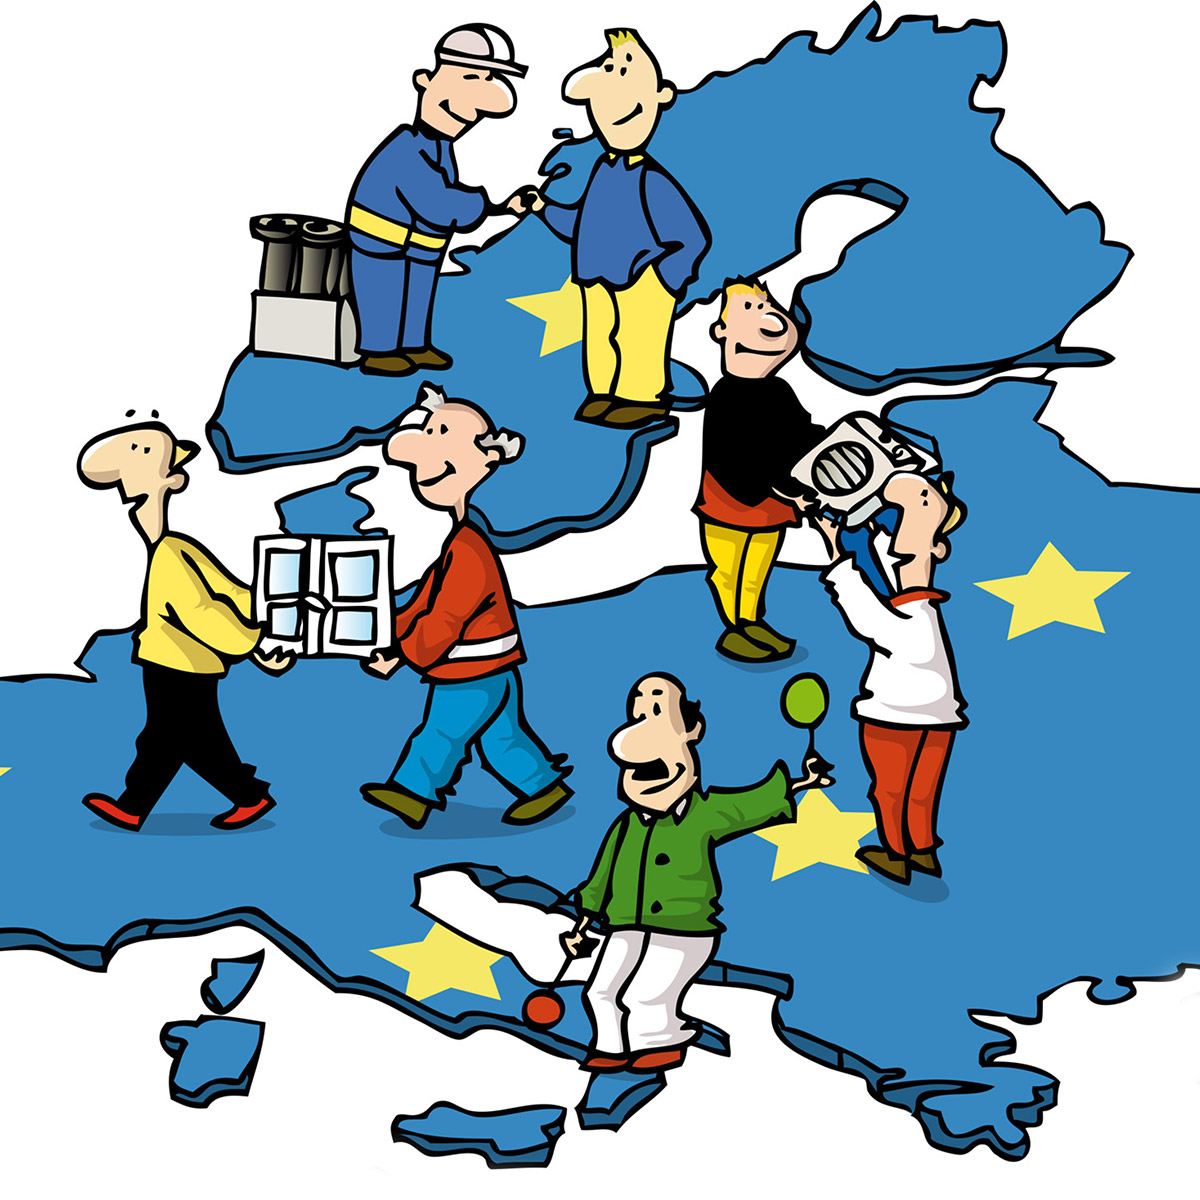 Cartoon zum europäischen Binnenmarkt